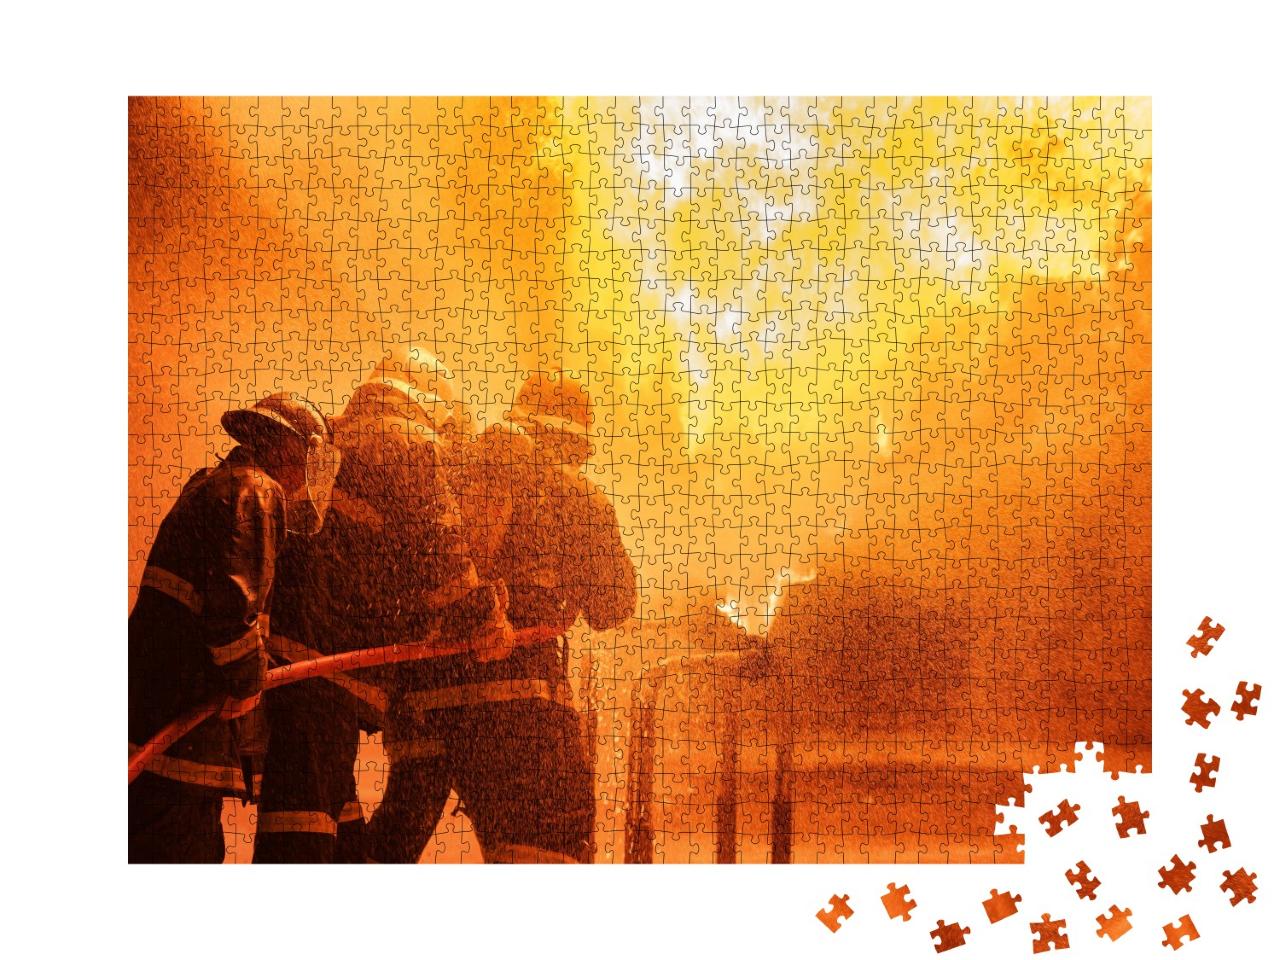 Puzzle de 1000 pièces « Pompiers en train de combattre un incendie »